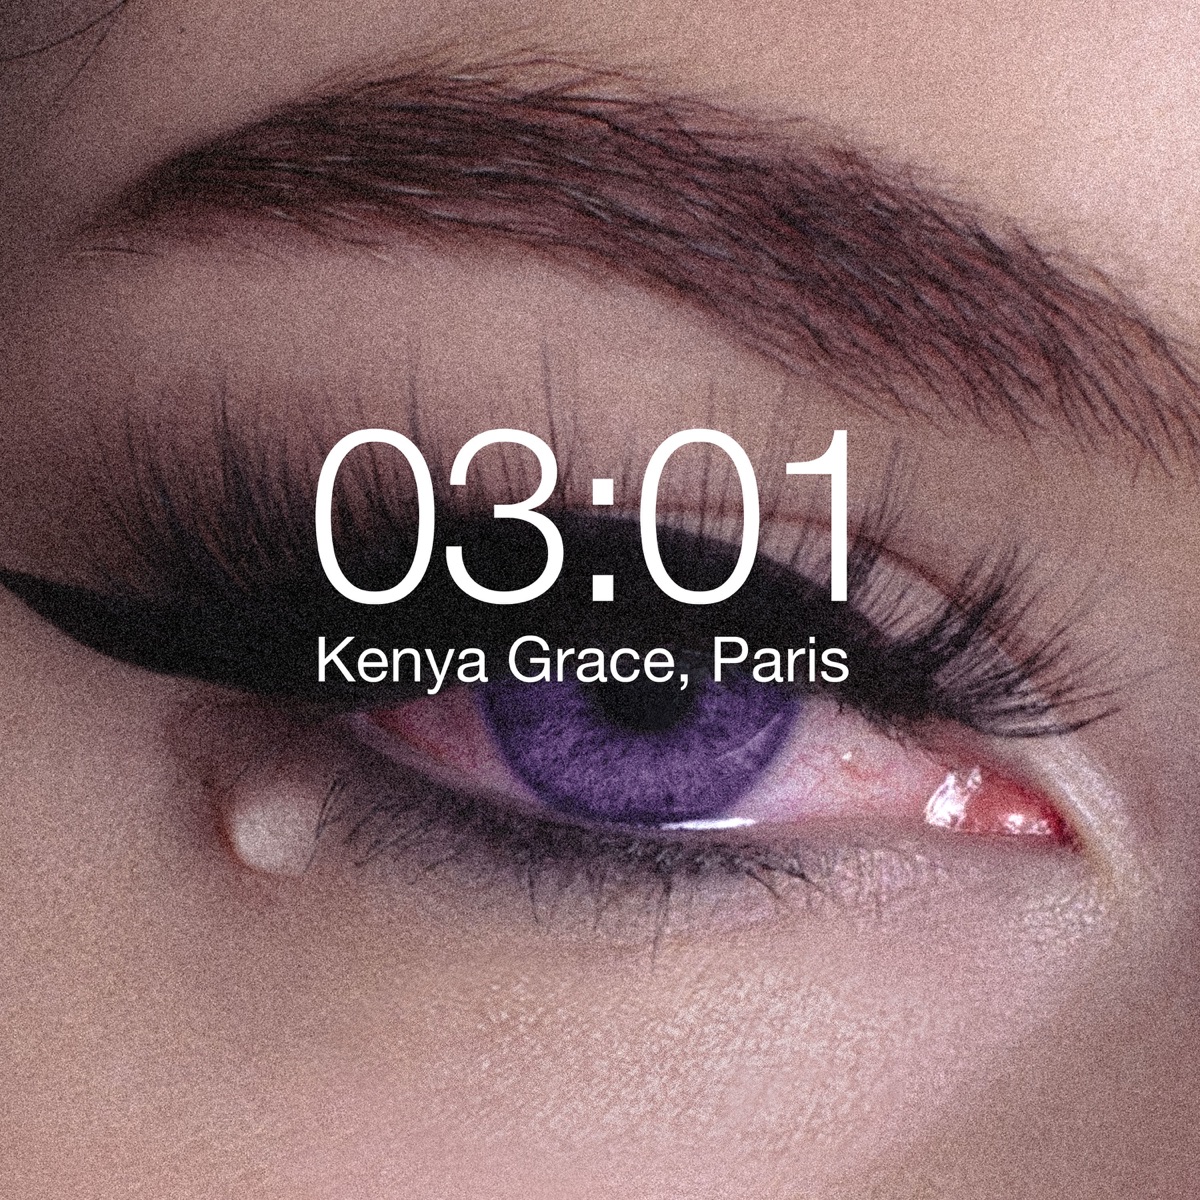 Kenya Grace — Paris cover artwork